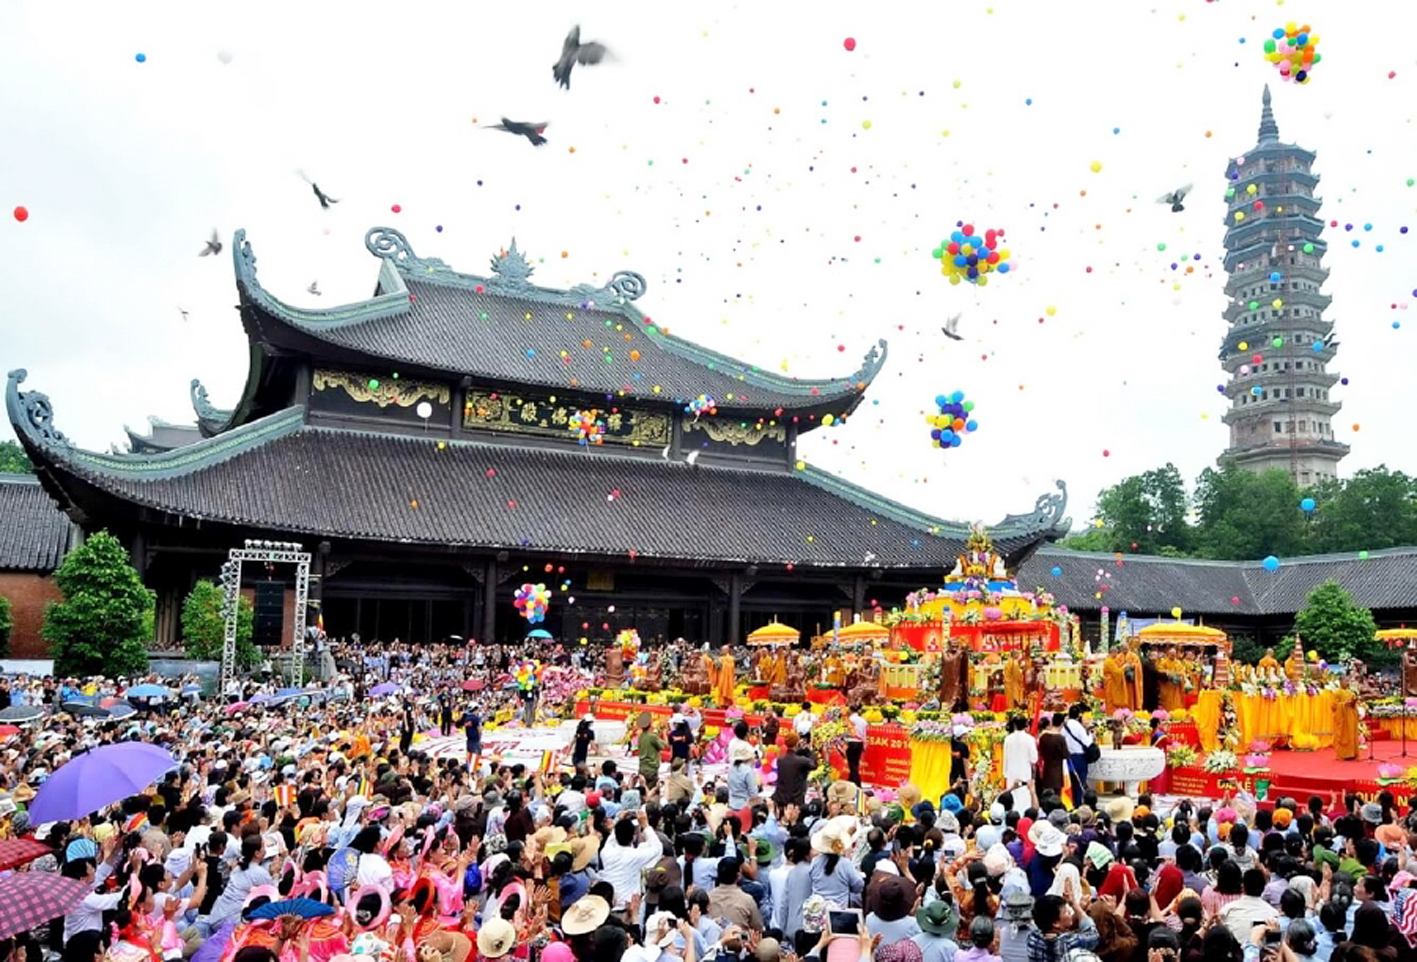 Lễ hội chùa Hương, một lễ hội lớn và mở đầu cho tháng lễ hội ở miền Bắc, phải tạm hoãn vì đại dịch covid-19